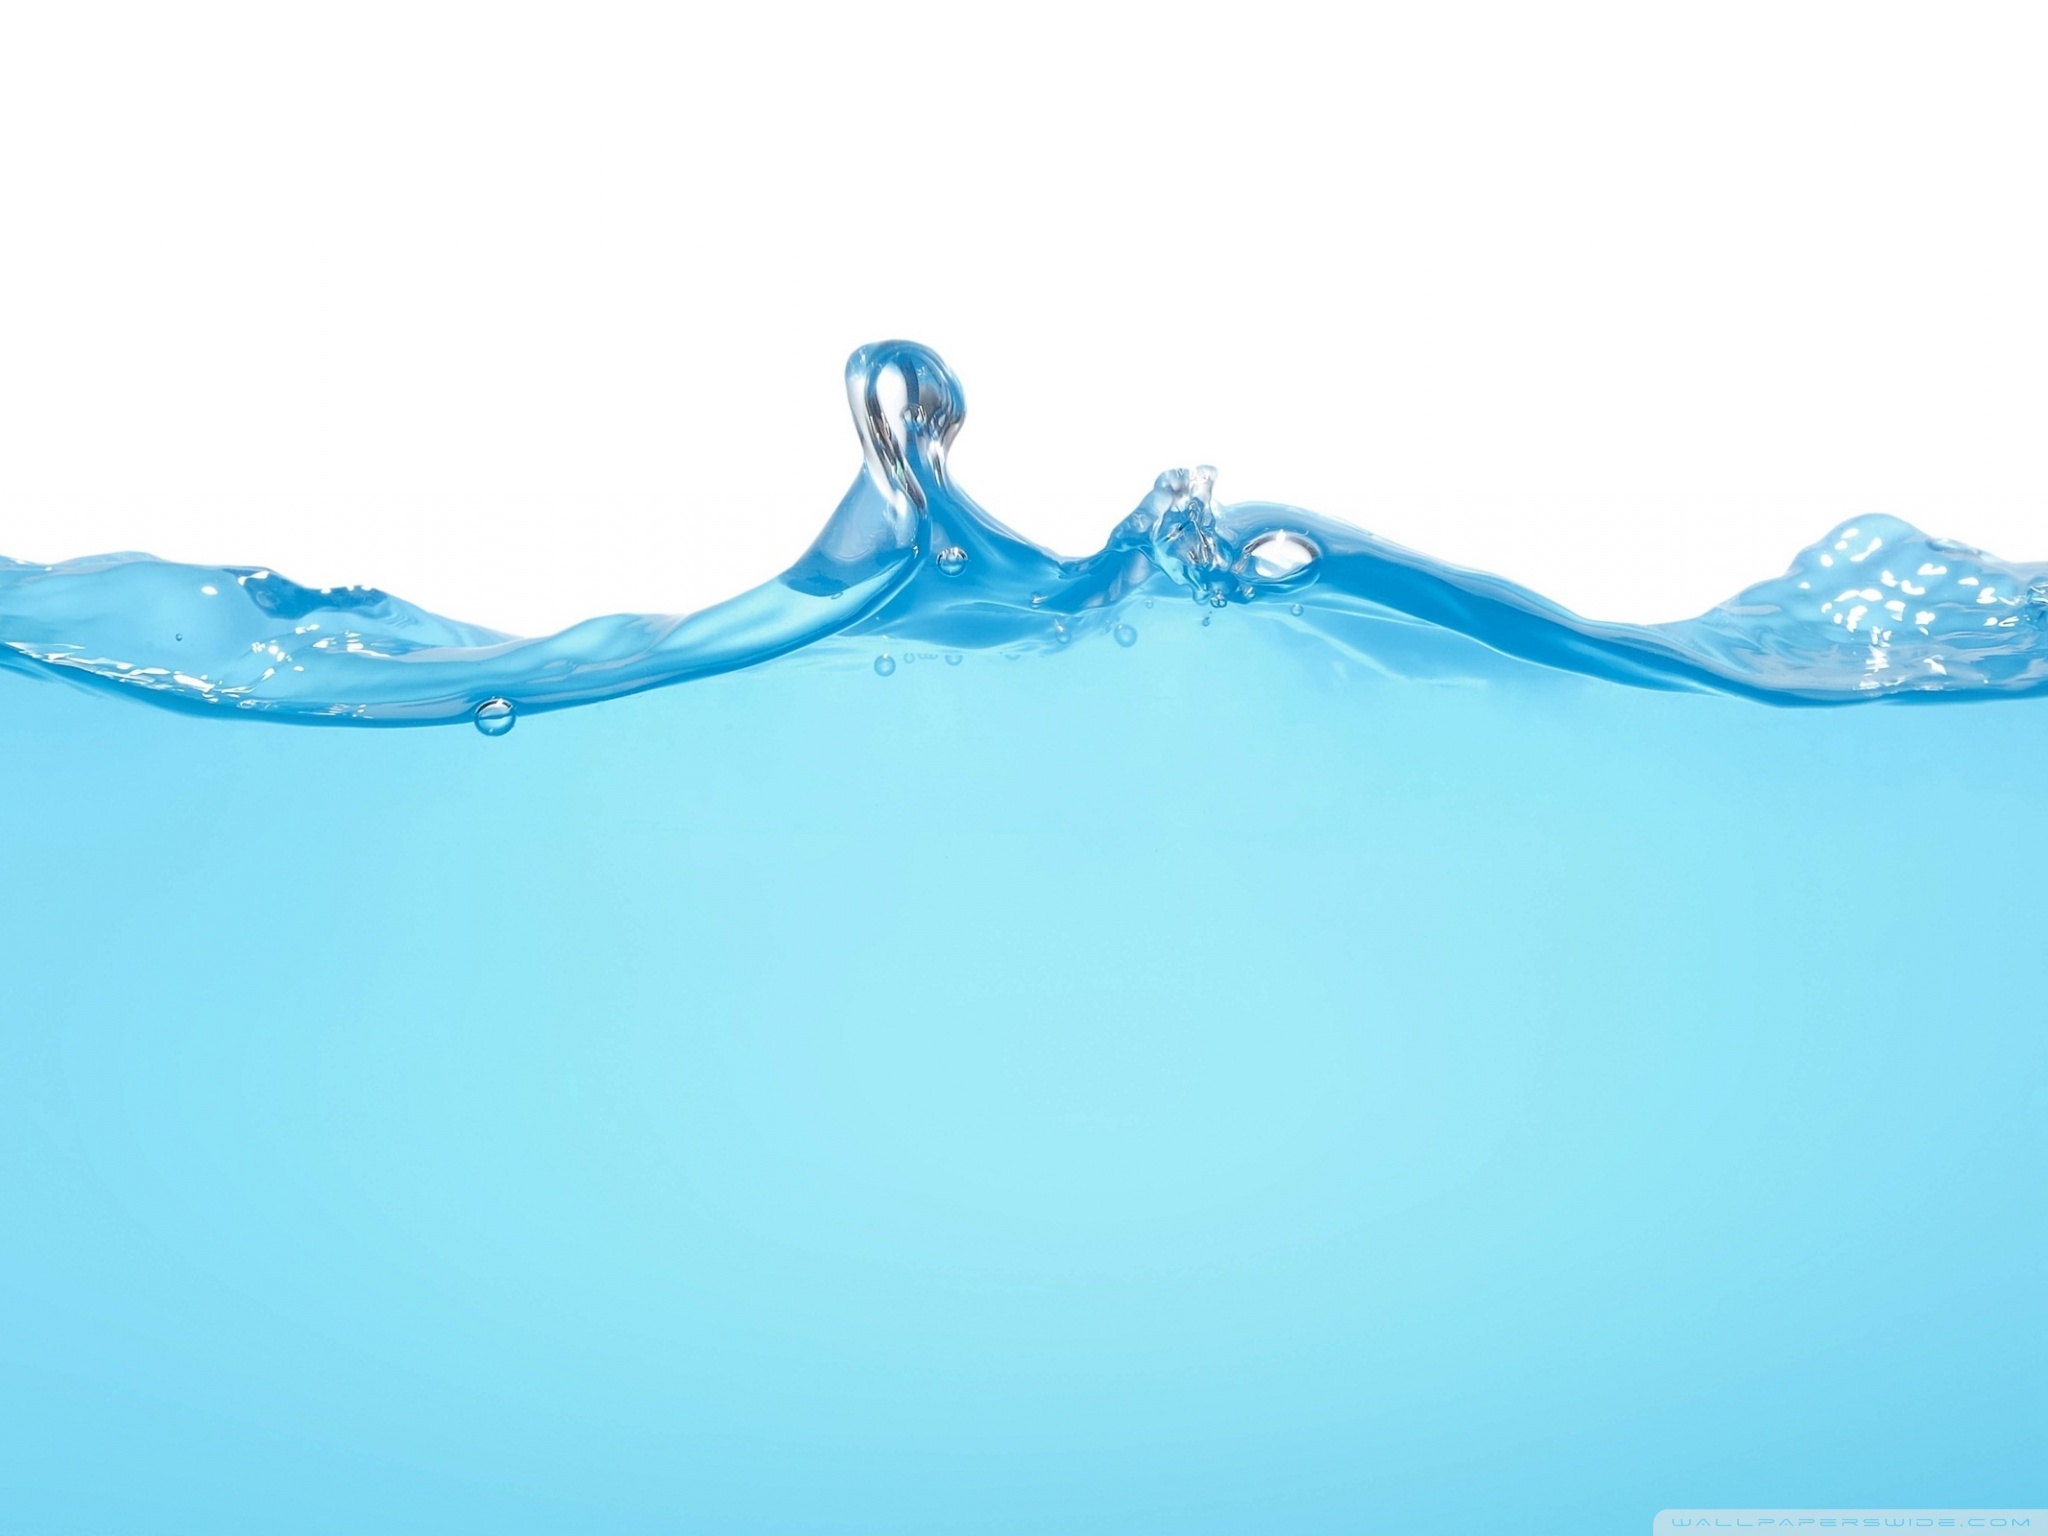 Скачать обои бесплатно Вода, Синий, Художественные картинка на рабочий стол ПК